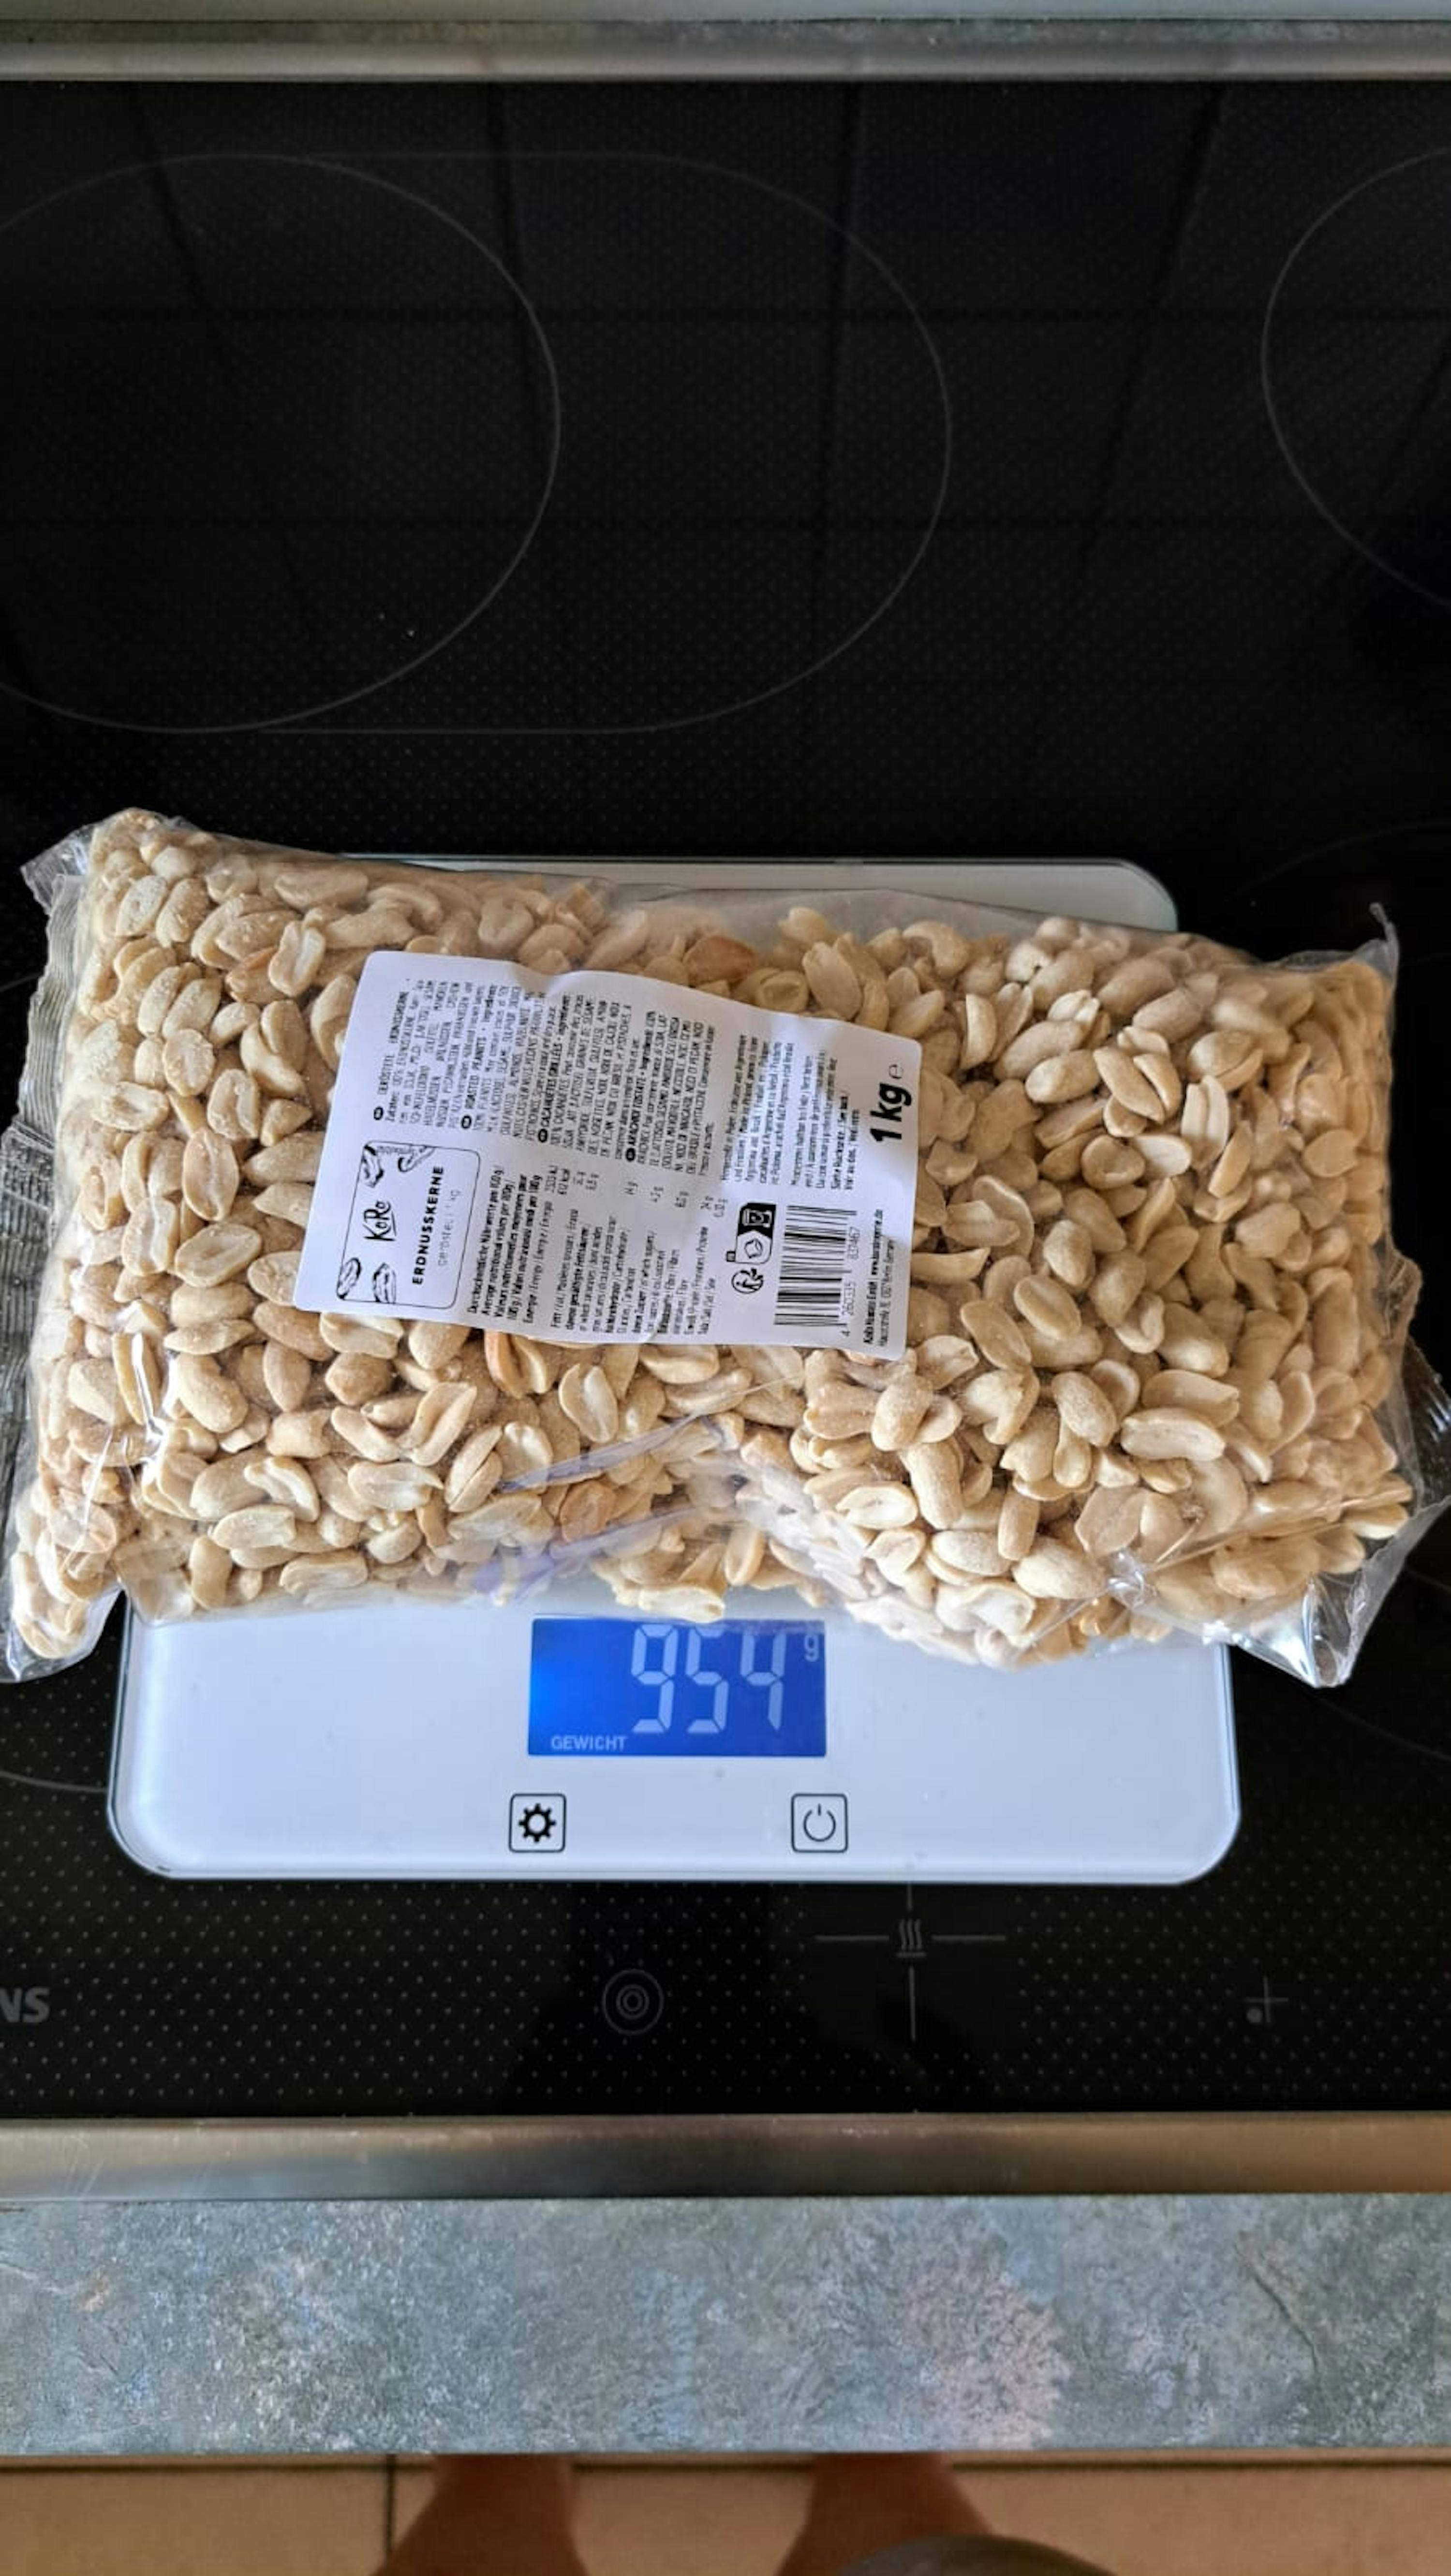 Cacahuètes grillées non salées bio Naturaplan (200g) acheter à prix réduit